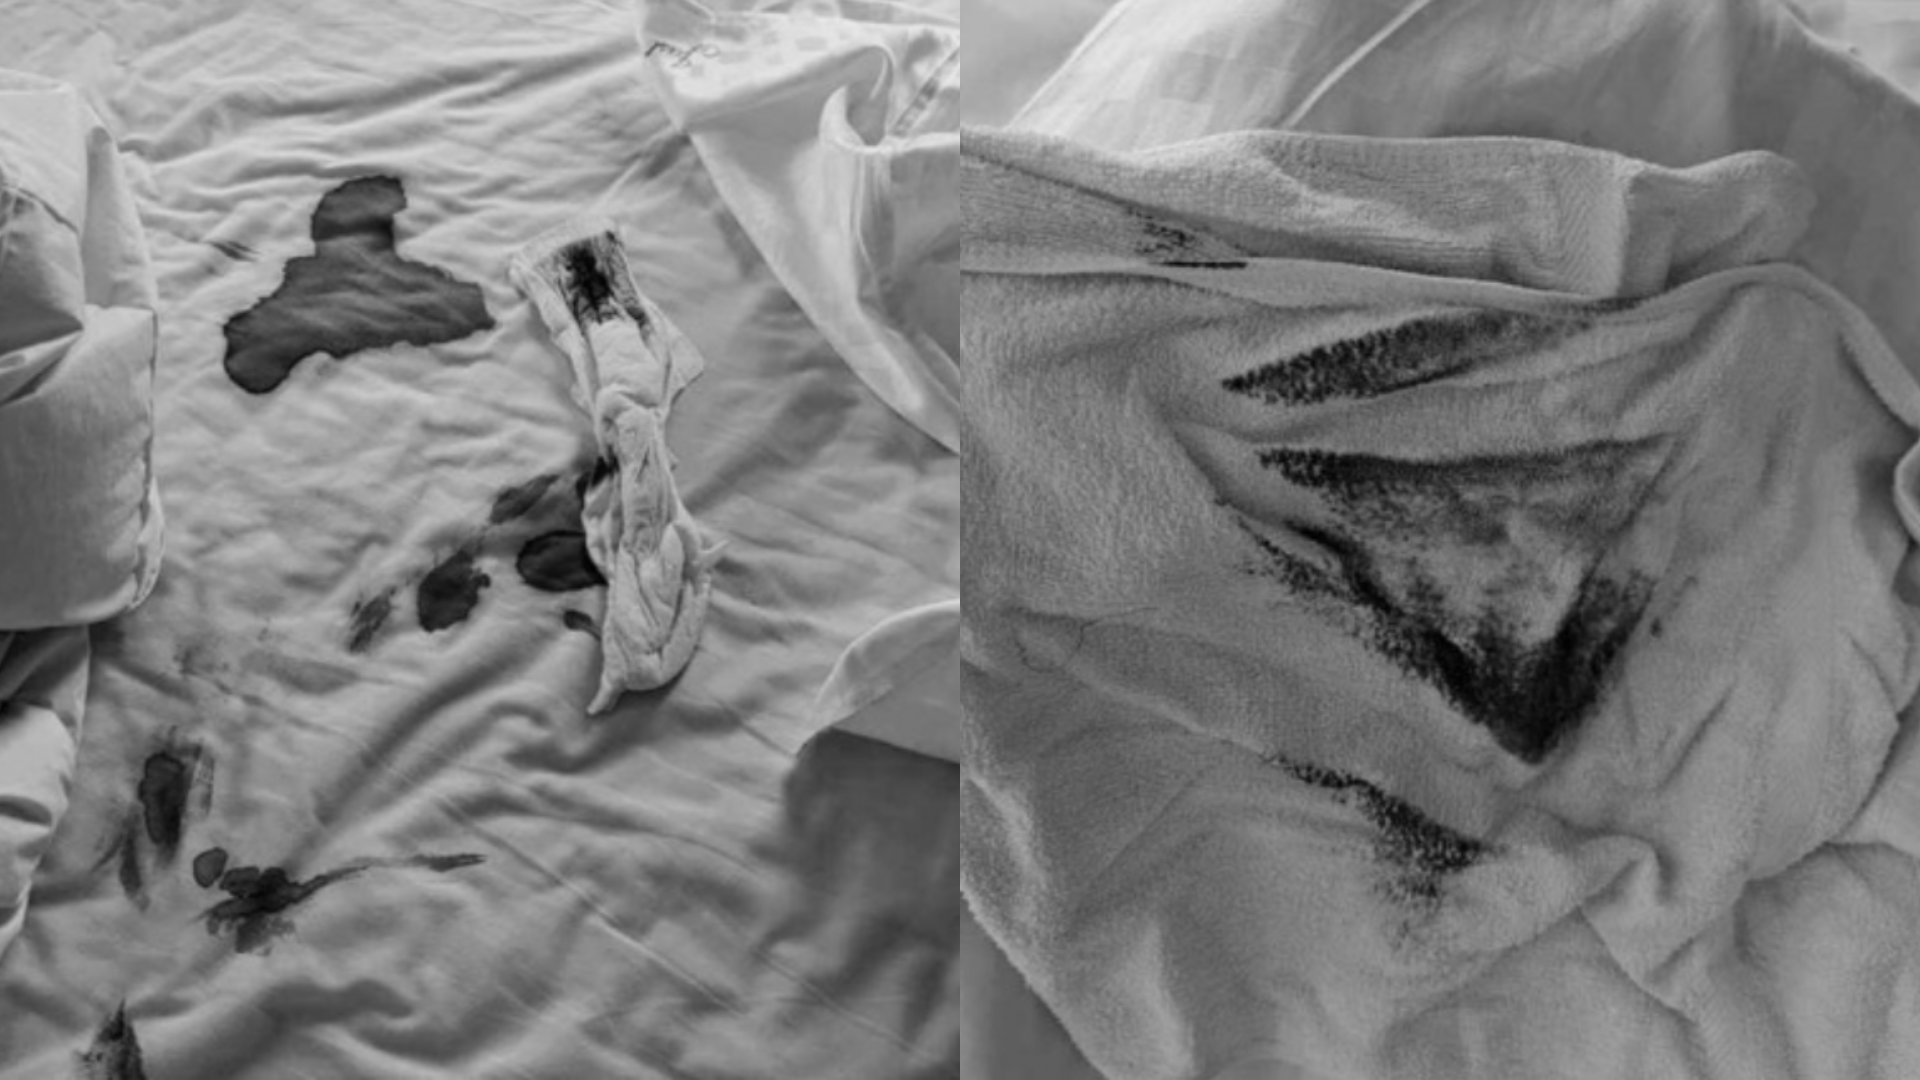 旅館業者控訴房客將床具弄得血跡斑斑還將用過衛生棉貼上去